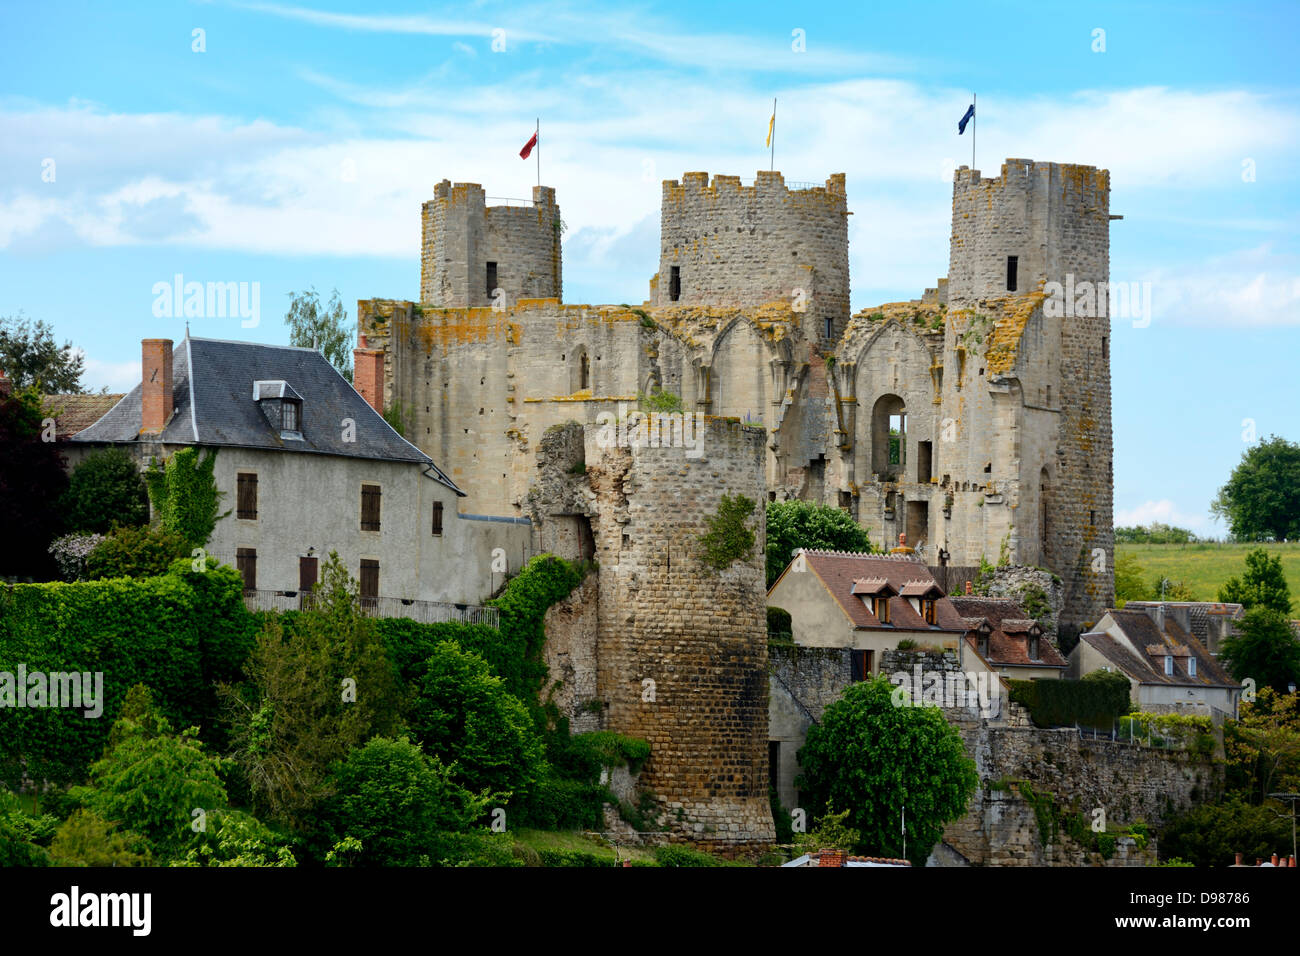 Thermal city of Bourbon l'Archambault, the castle, Bourbonnais, Allier, Auvergne, France, Europe Stock Photo